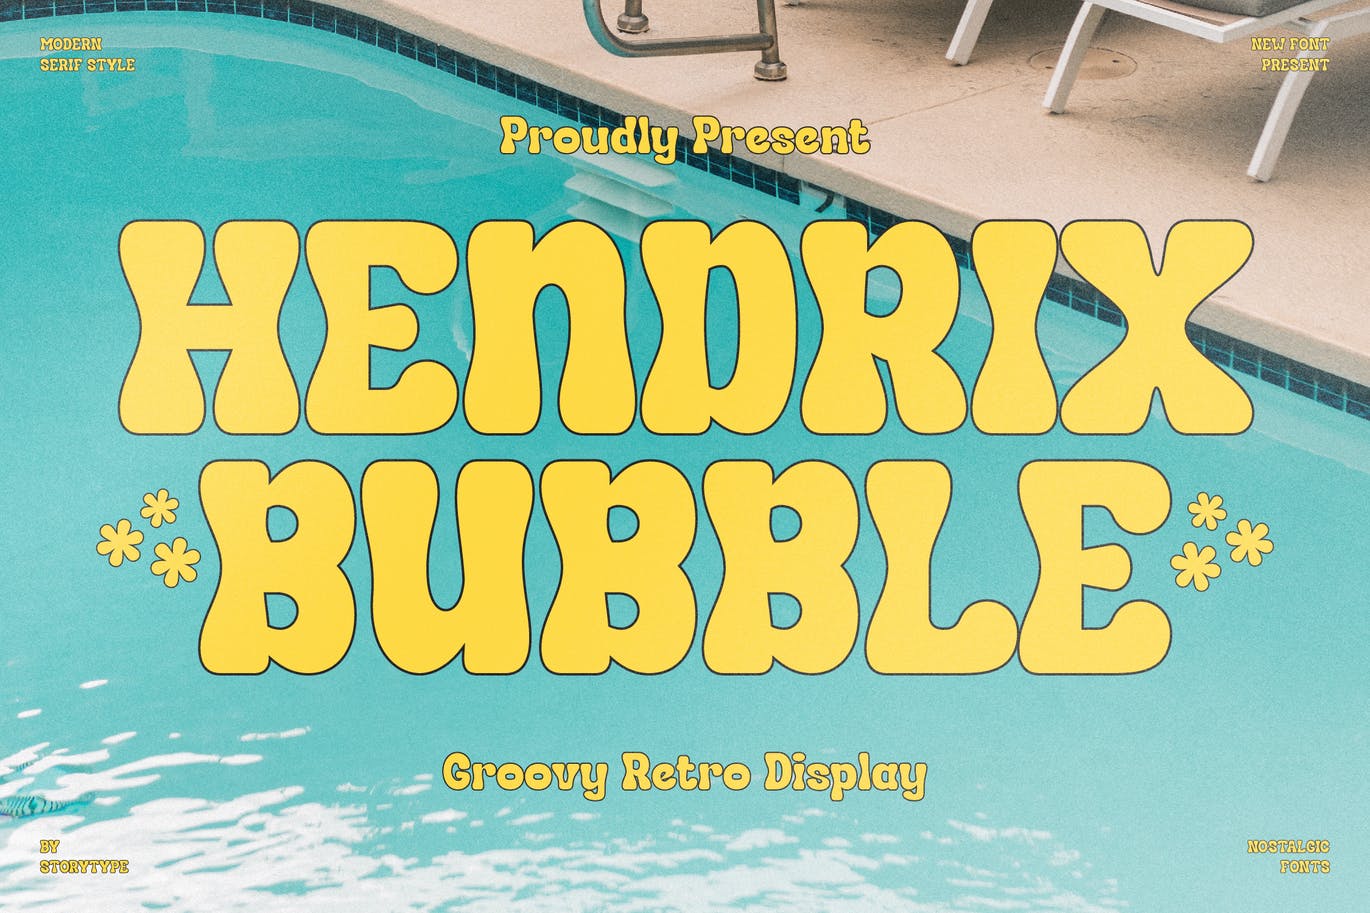 经典复古风格字体素材 Hendrix Bubble Groovy Retro Display 设计素材 第10张